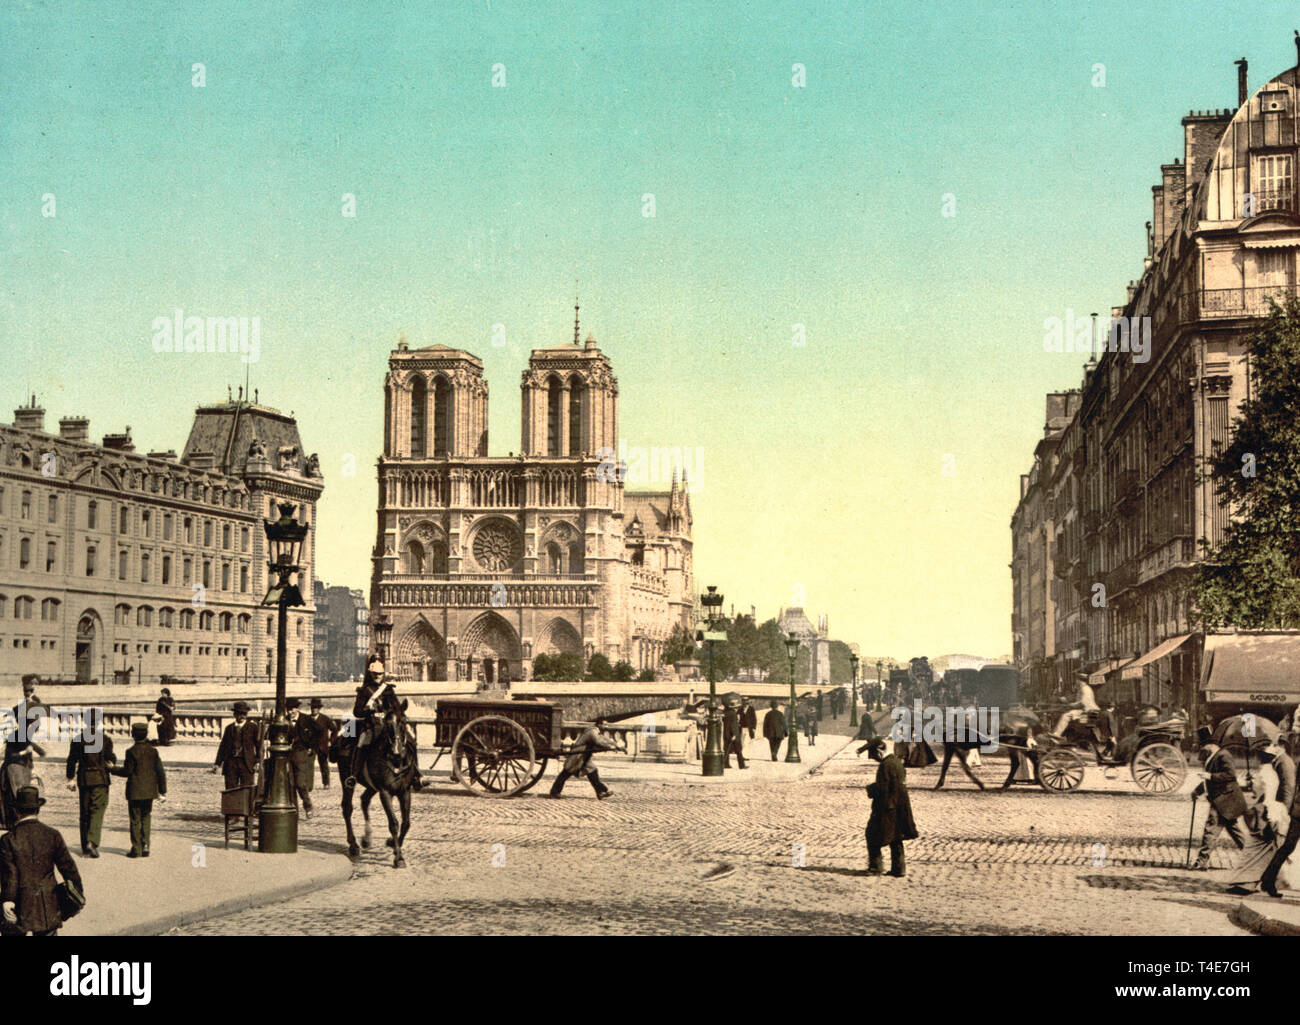 Notre Dame et Saint Michel pont, Paris, France, vers 1900 Banque D'Images